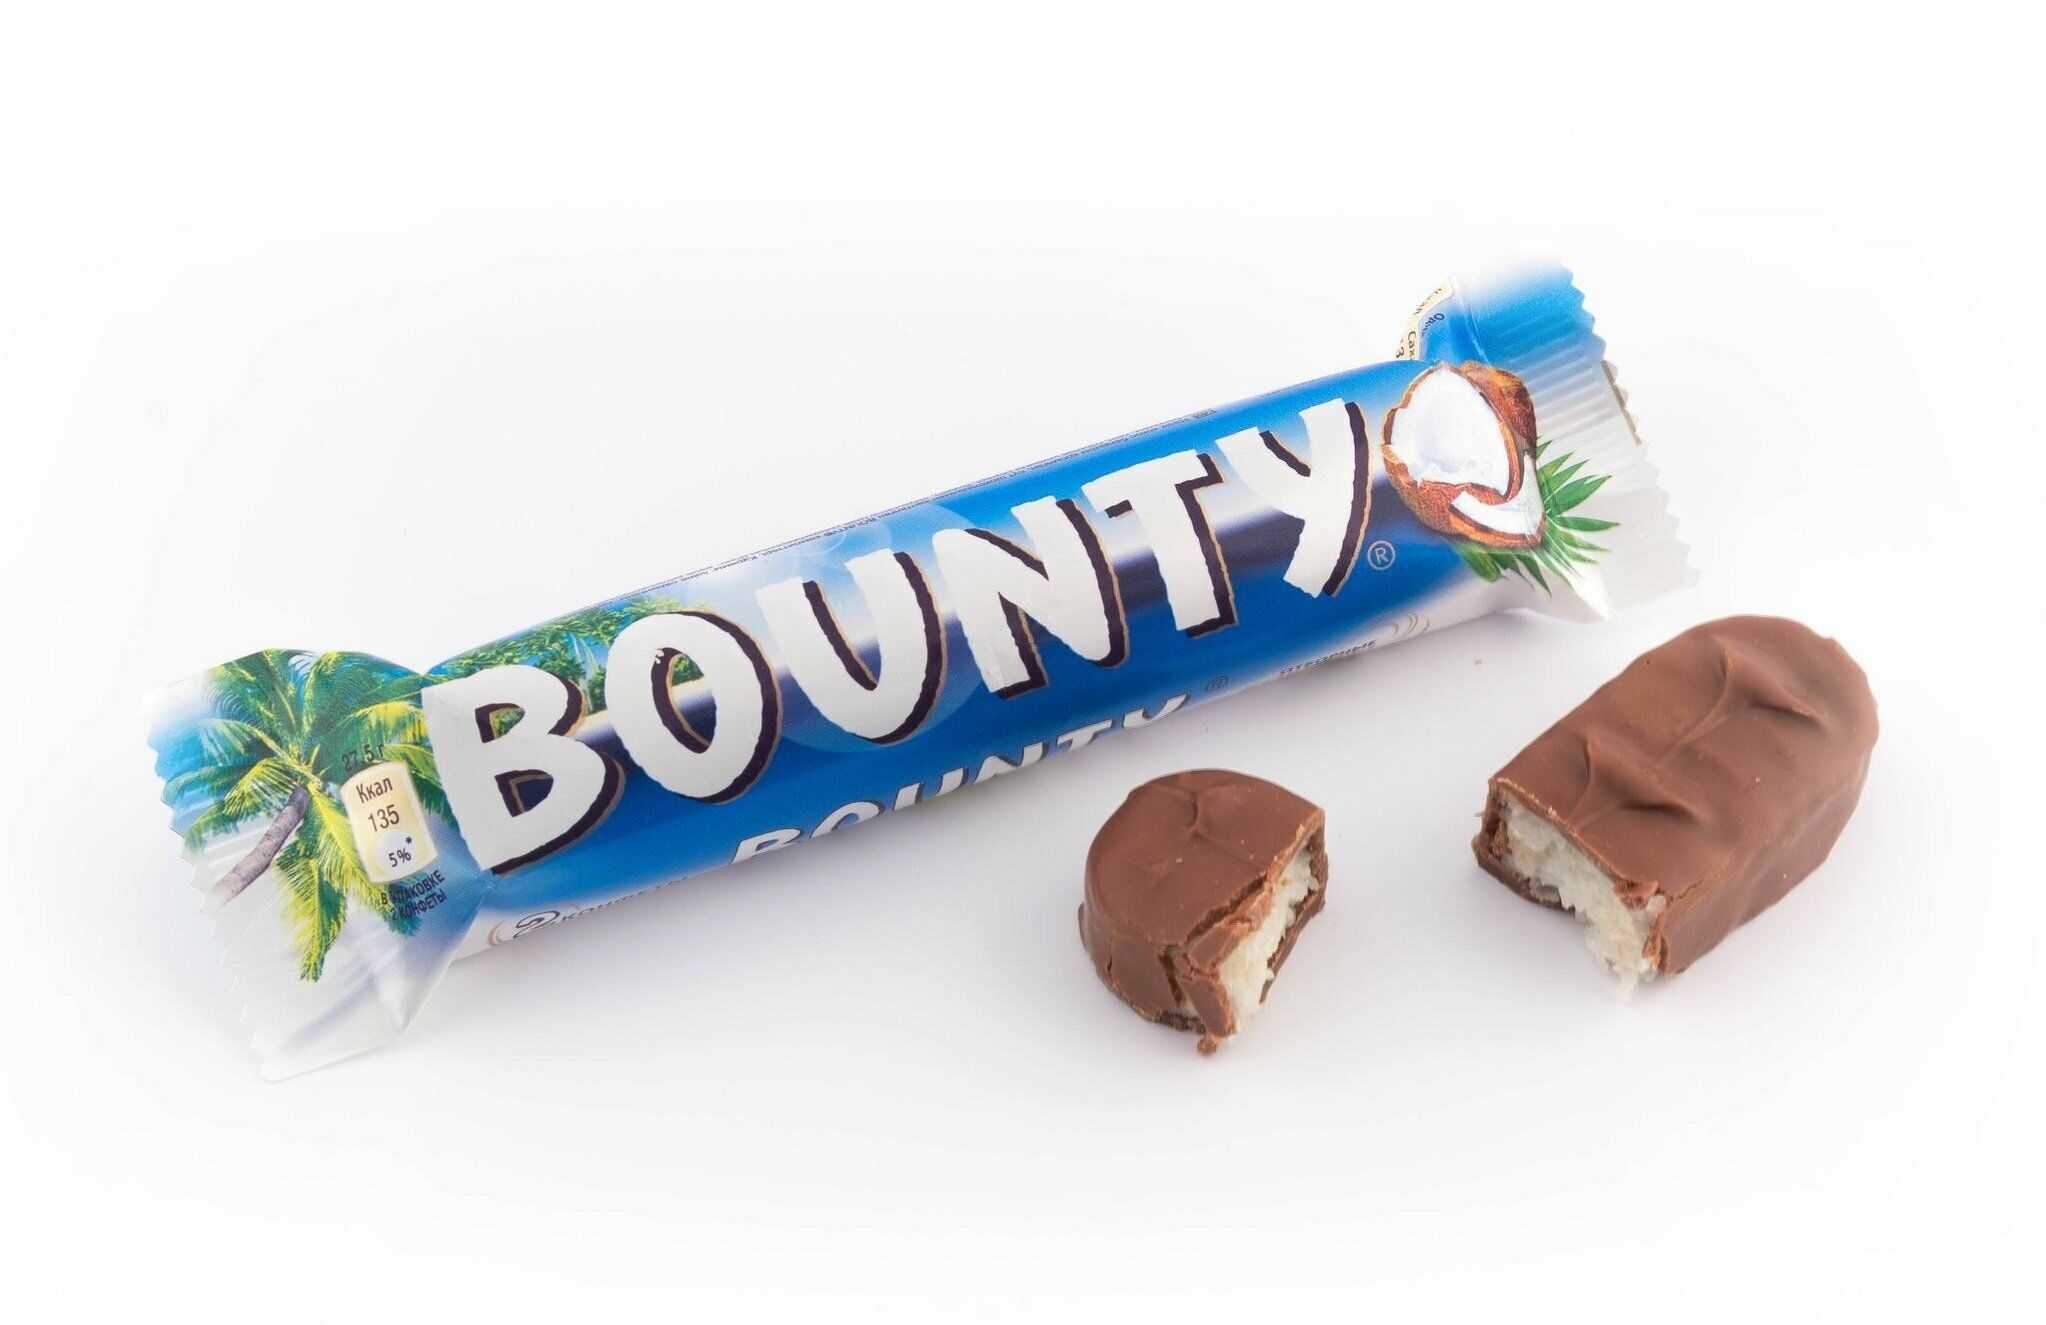 Шоколадный батончик Bounty 55 гр